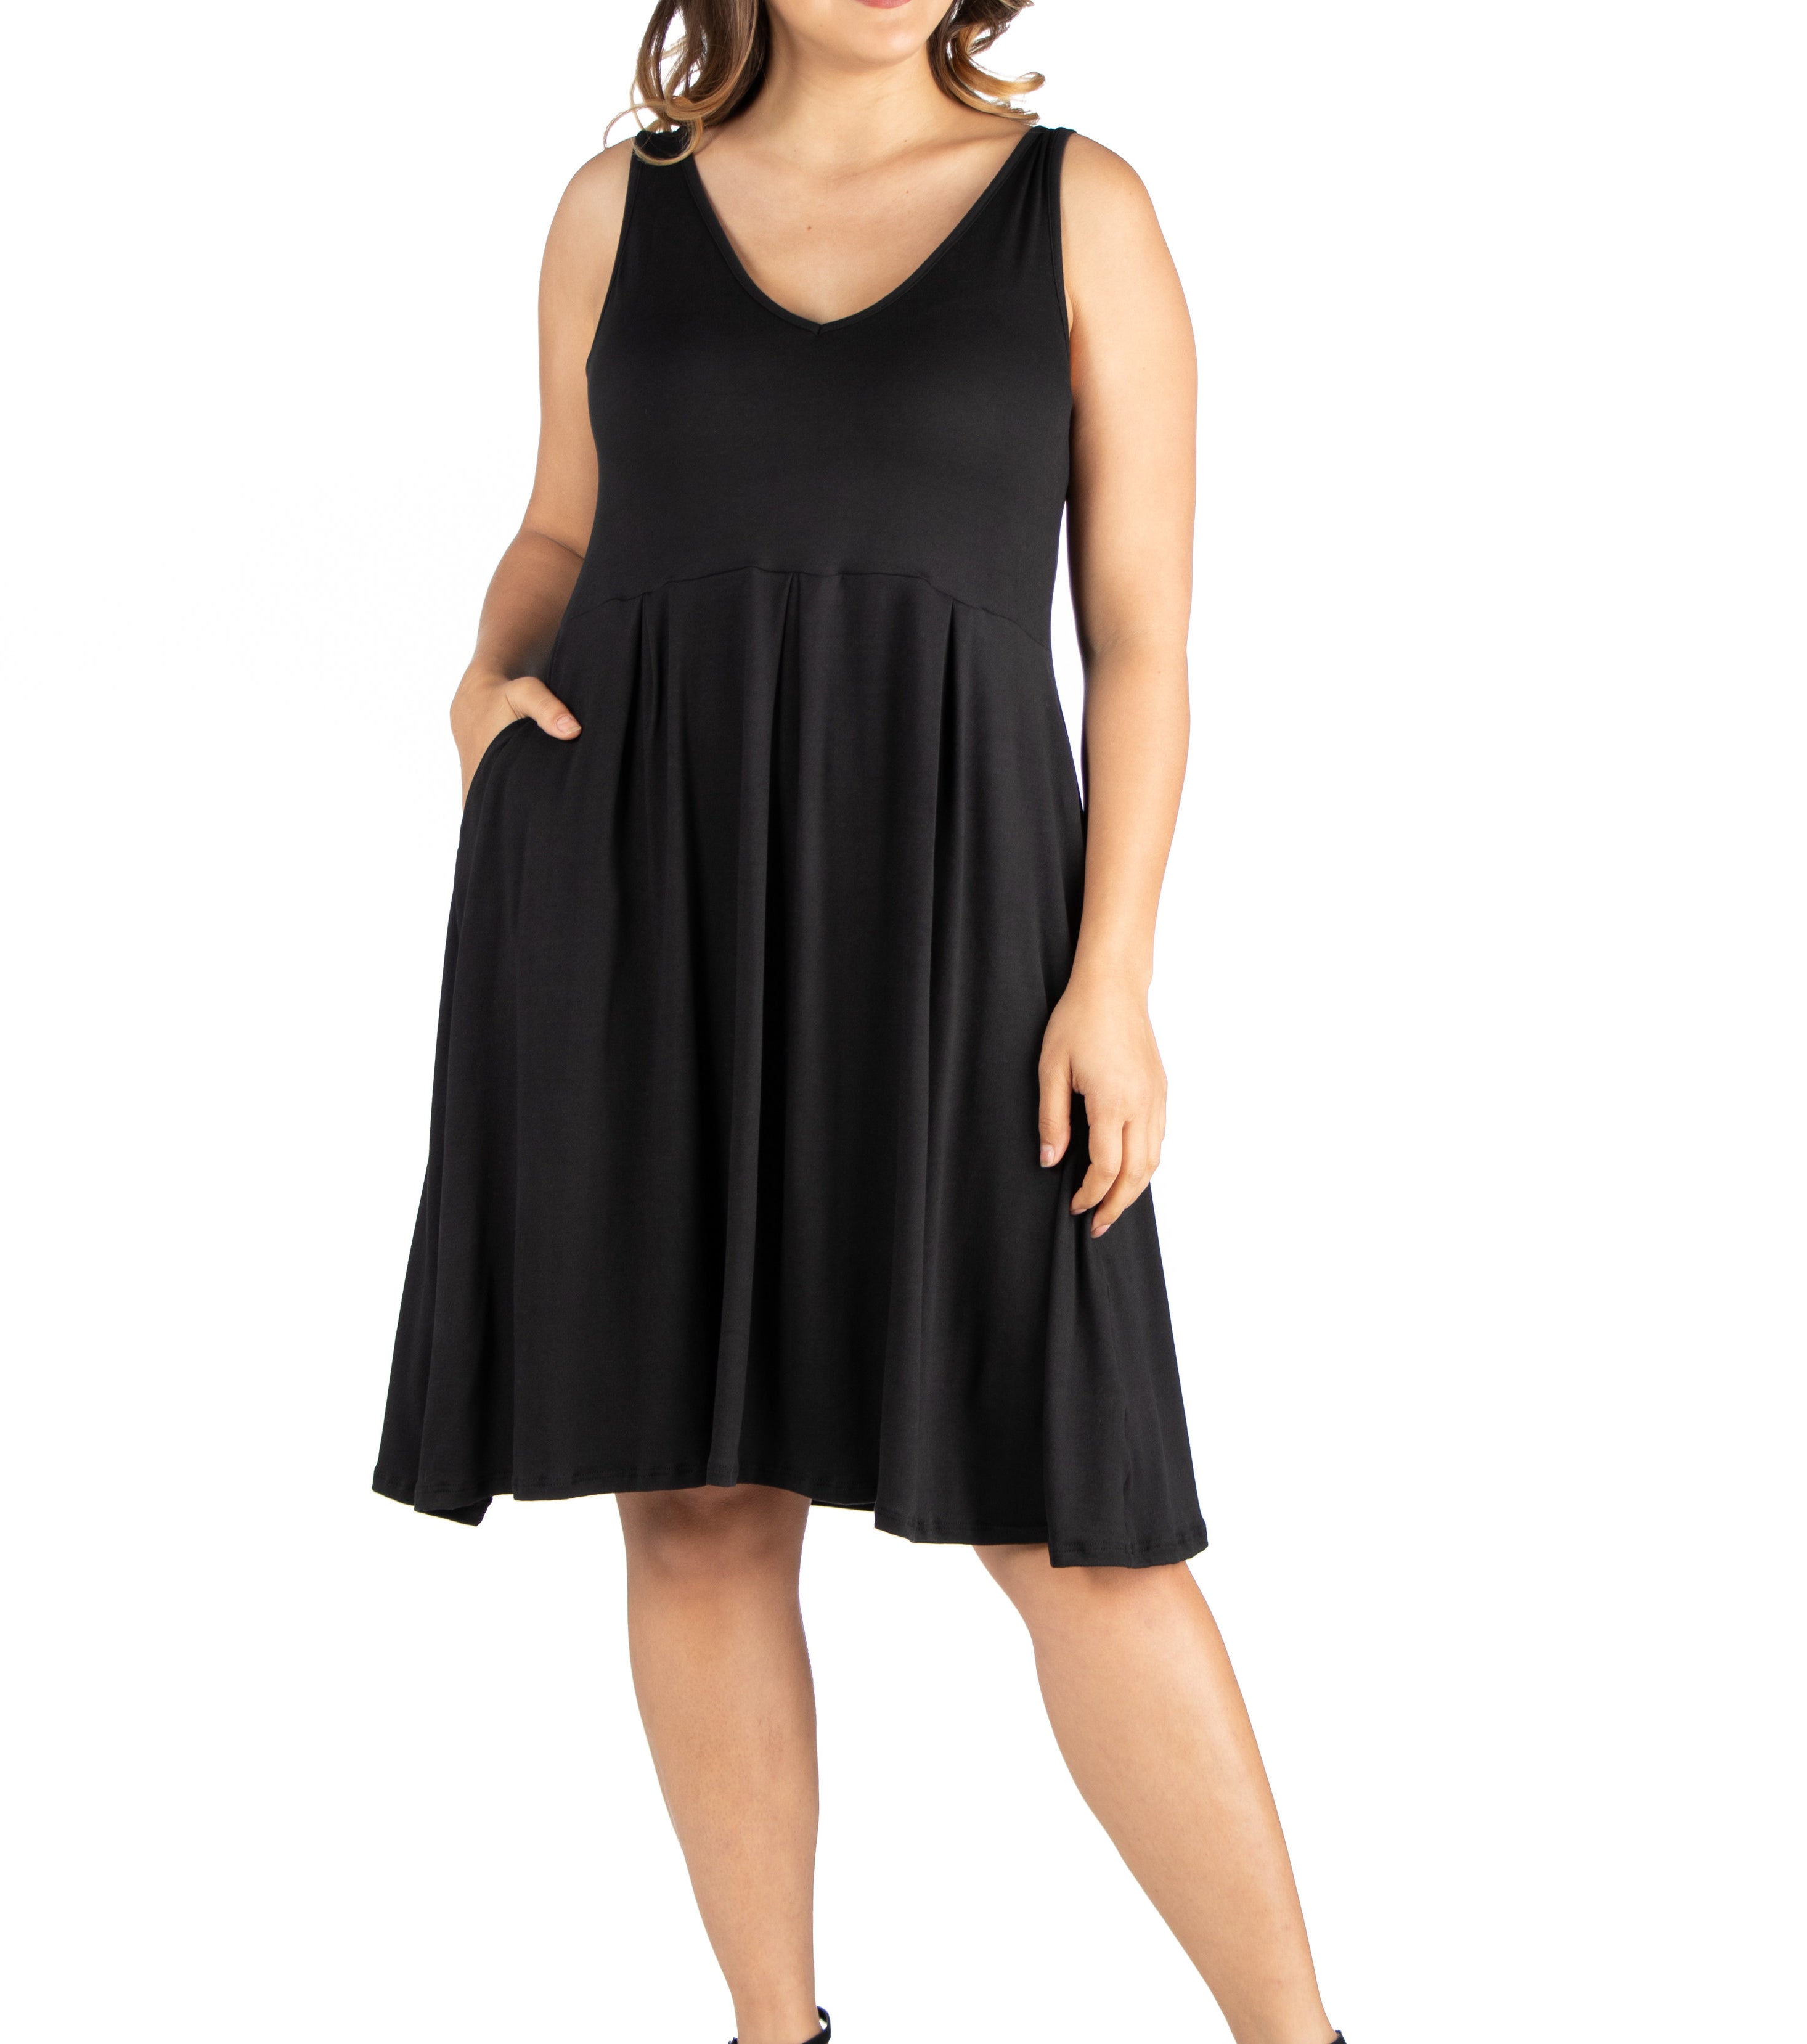 Model wearing the dress in black 